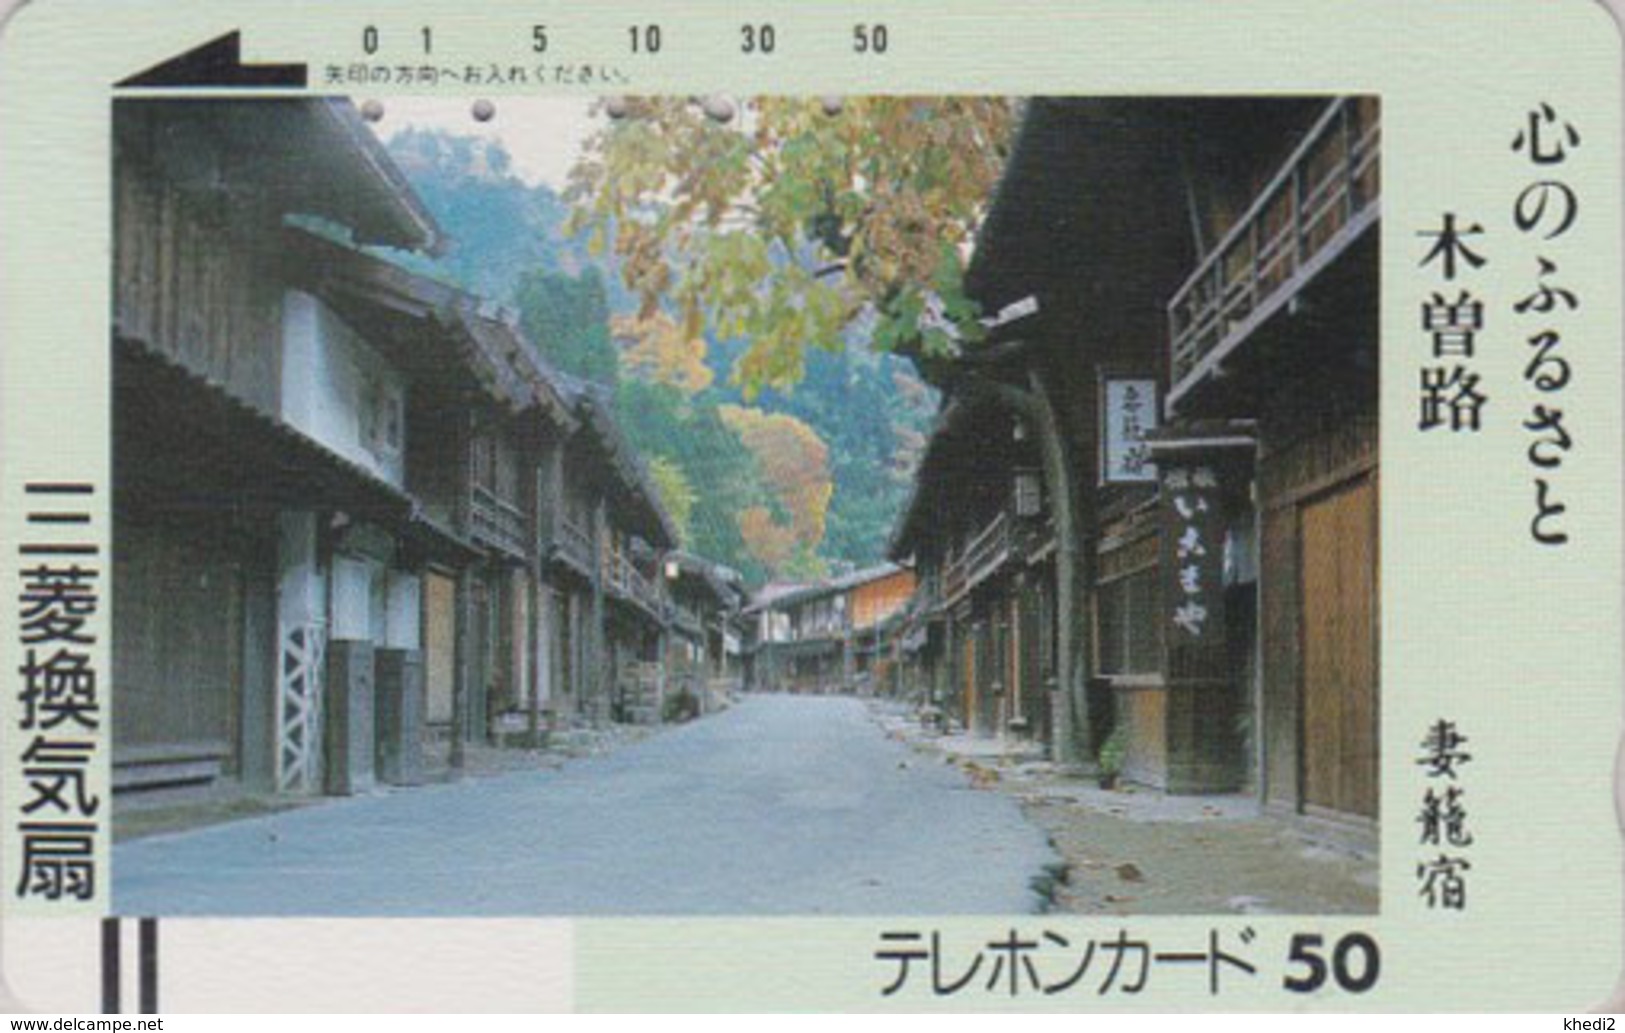 Télécarte Ancienne Japon / 110-3386 - Paysage - Rue & Maisons En Bois - Japan Front Bar Phonecard / Teleca - Japan